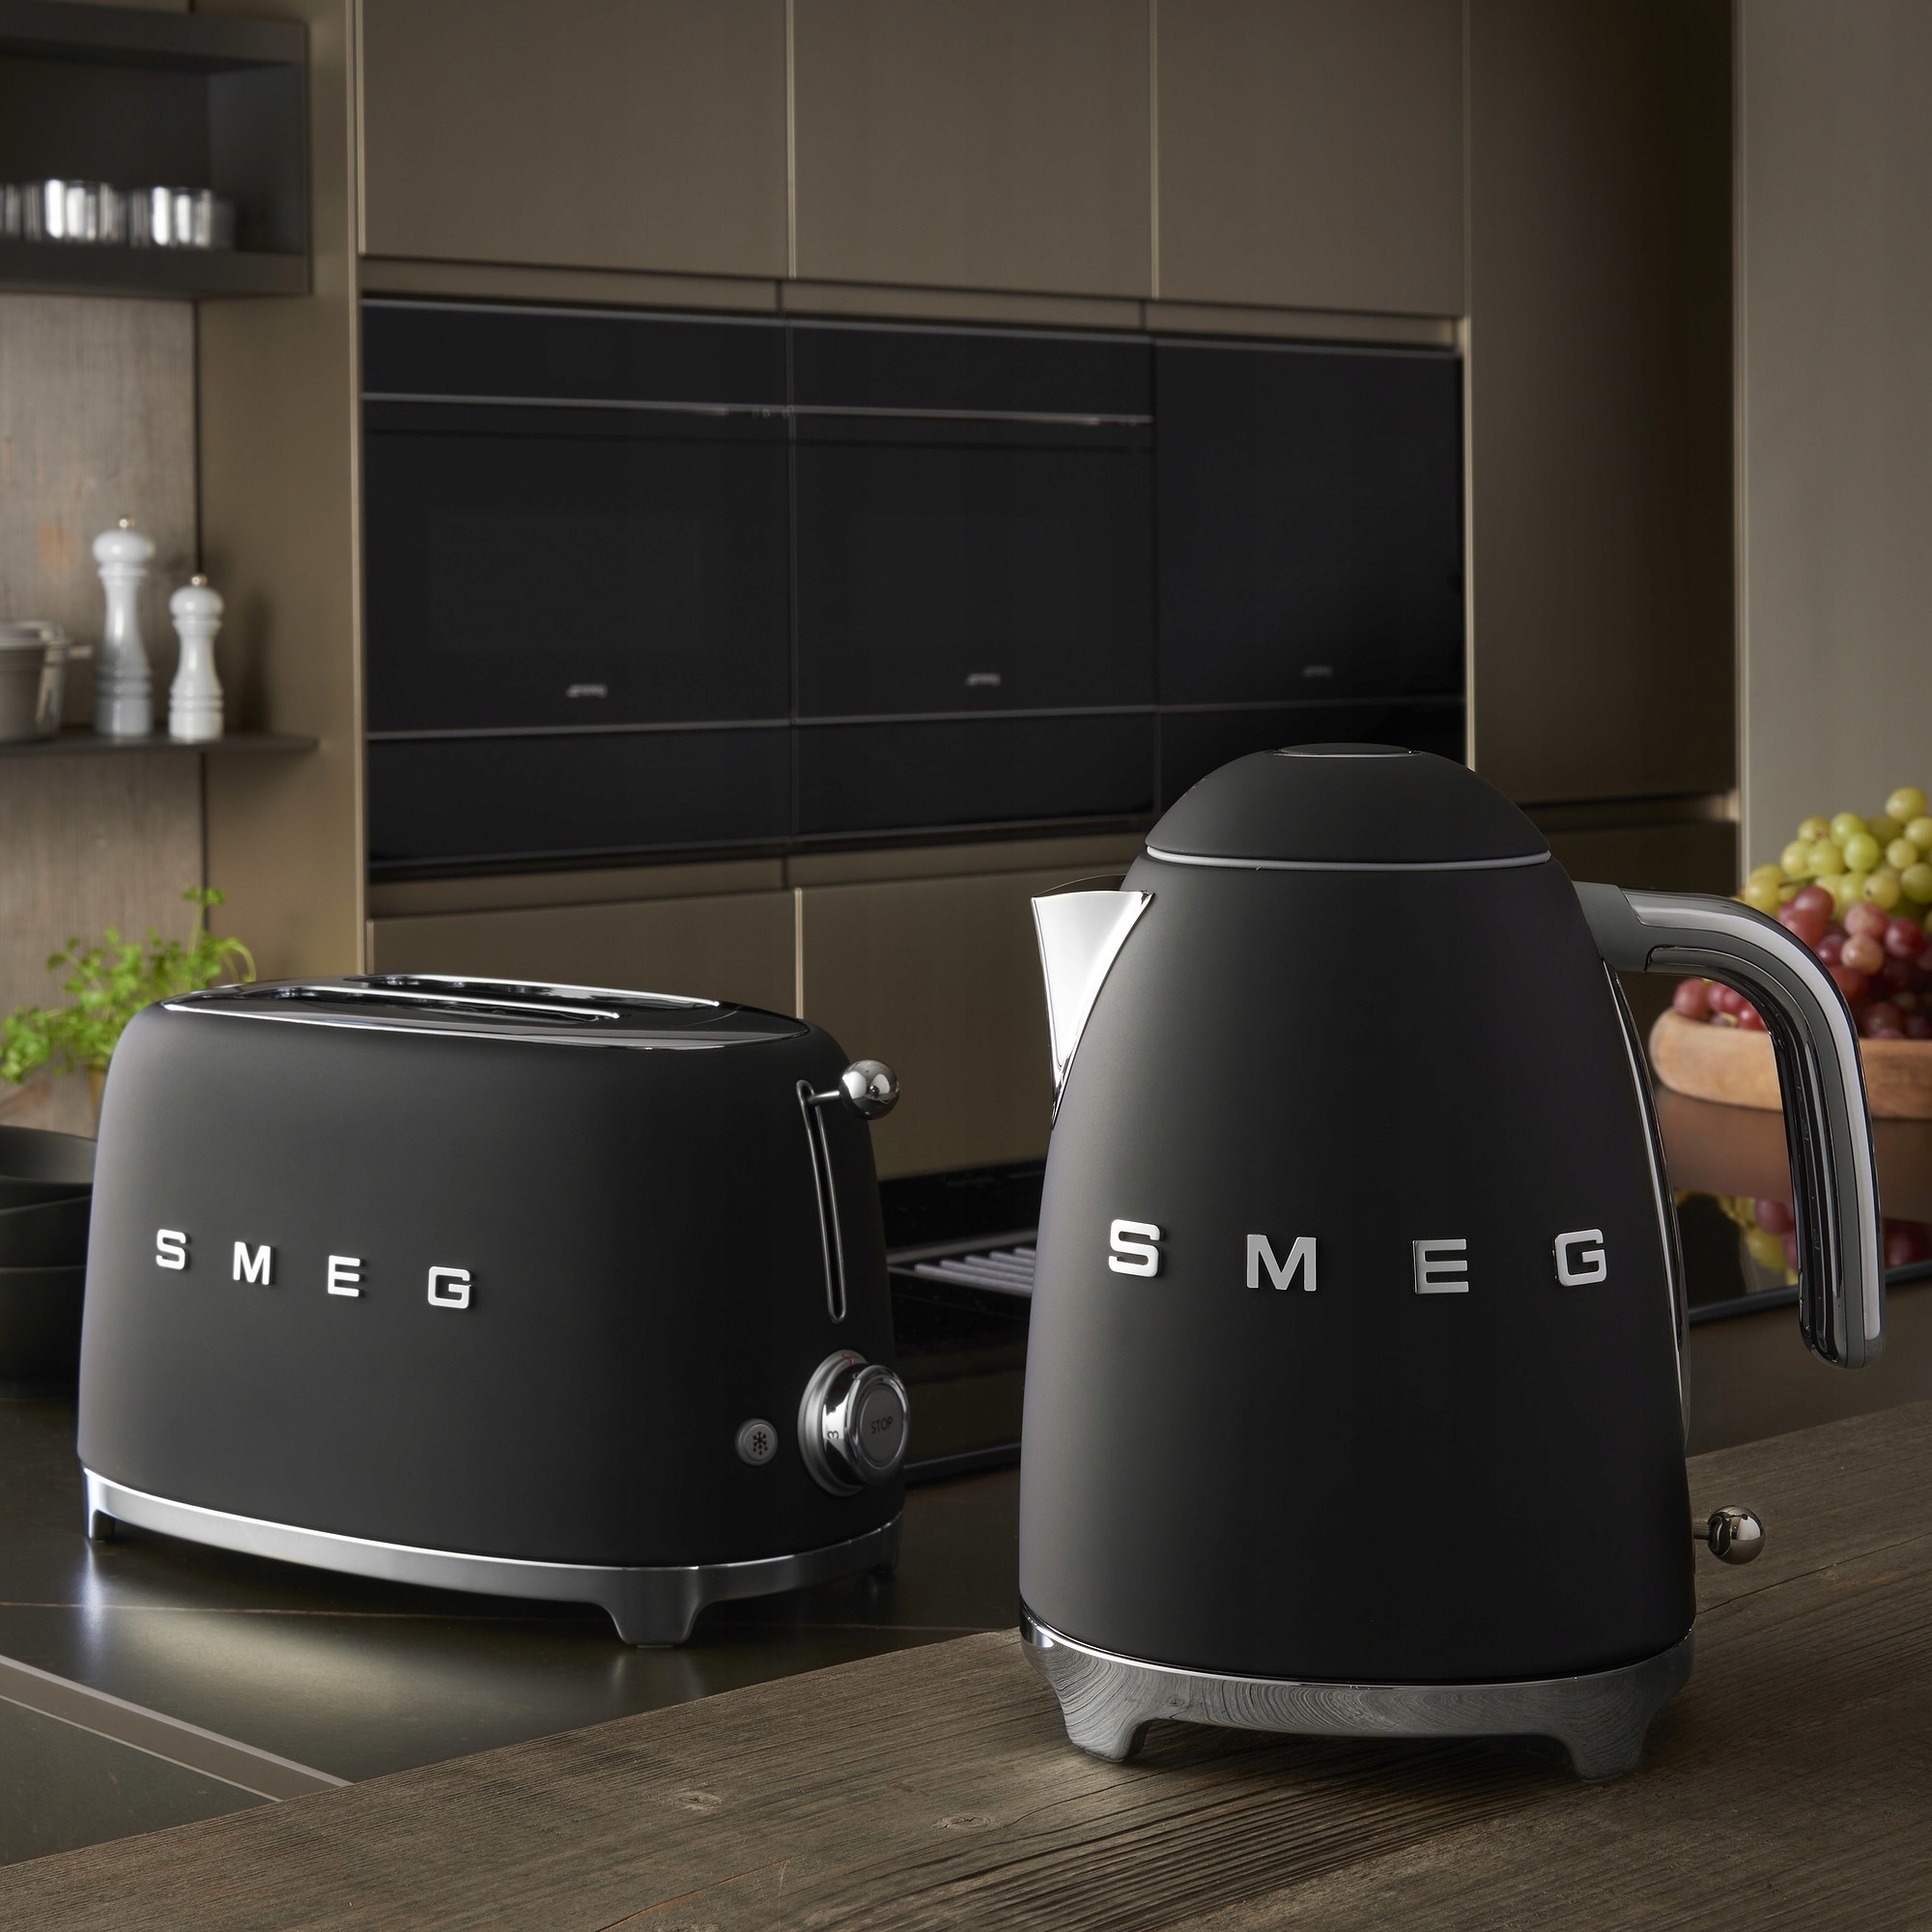 VIP-пропозиція - SMEG - Електричний чайник, чорний має вагу виробу 1,6 кг